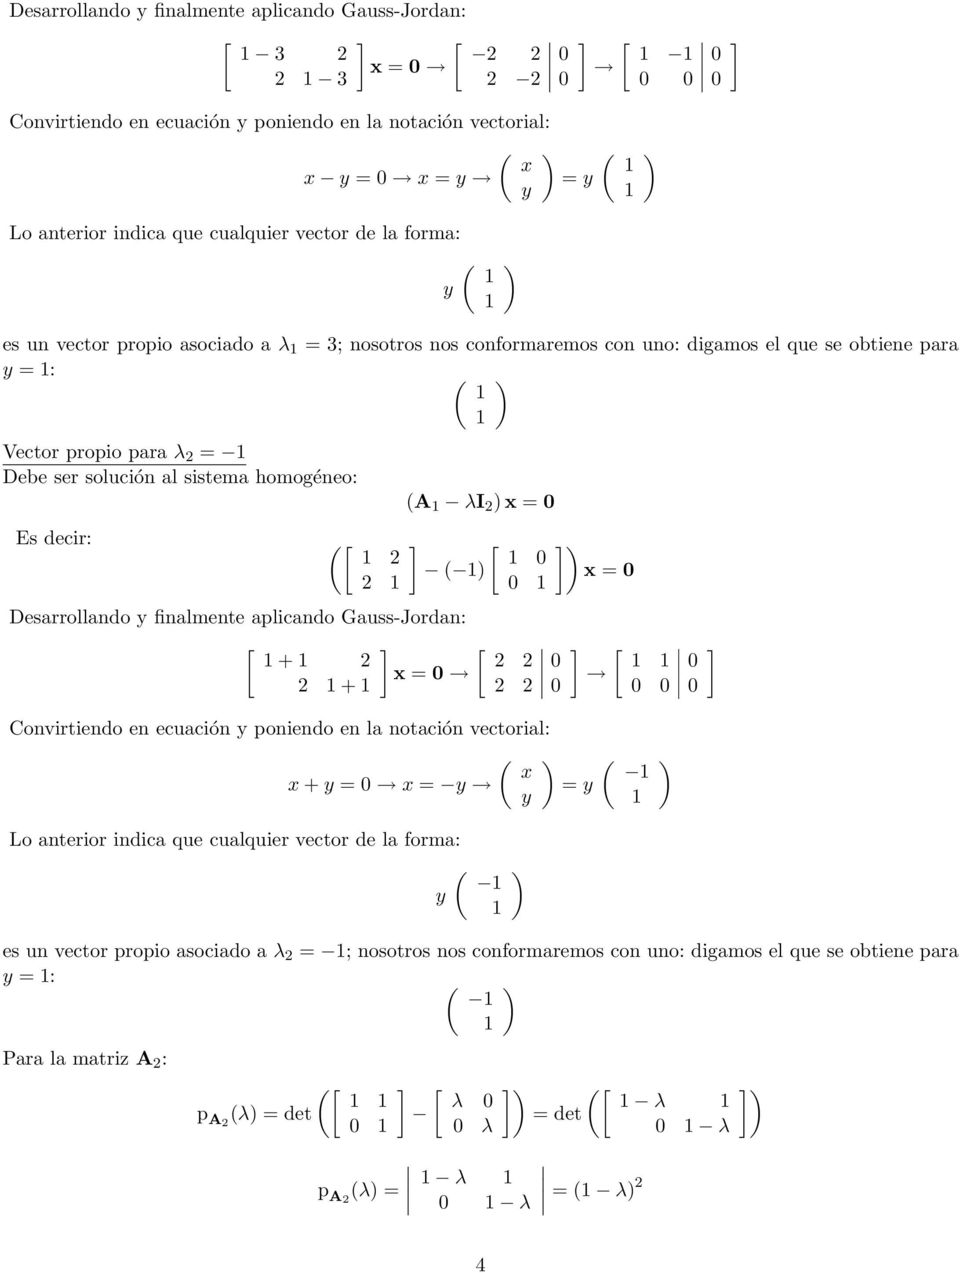 (A λi x = [ ( Desarrollando y finalmente aplicando Gauss-Jordan: [ [ + x = + x = [ Convirtiendo en ecuación y poniendo en la notación vectorial: ( x x + y = x = y = y y Lo anterior indica que